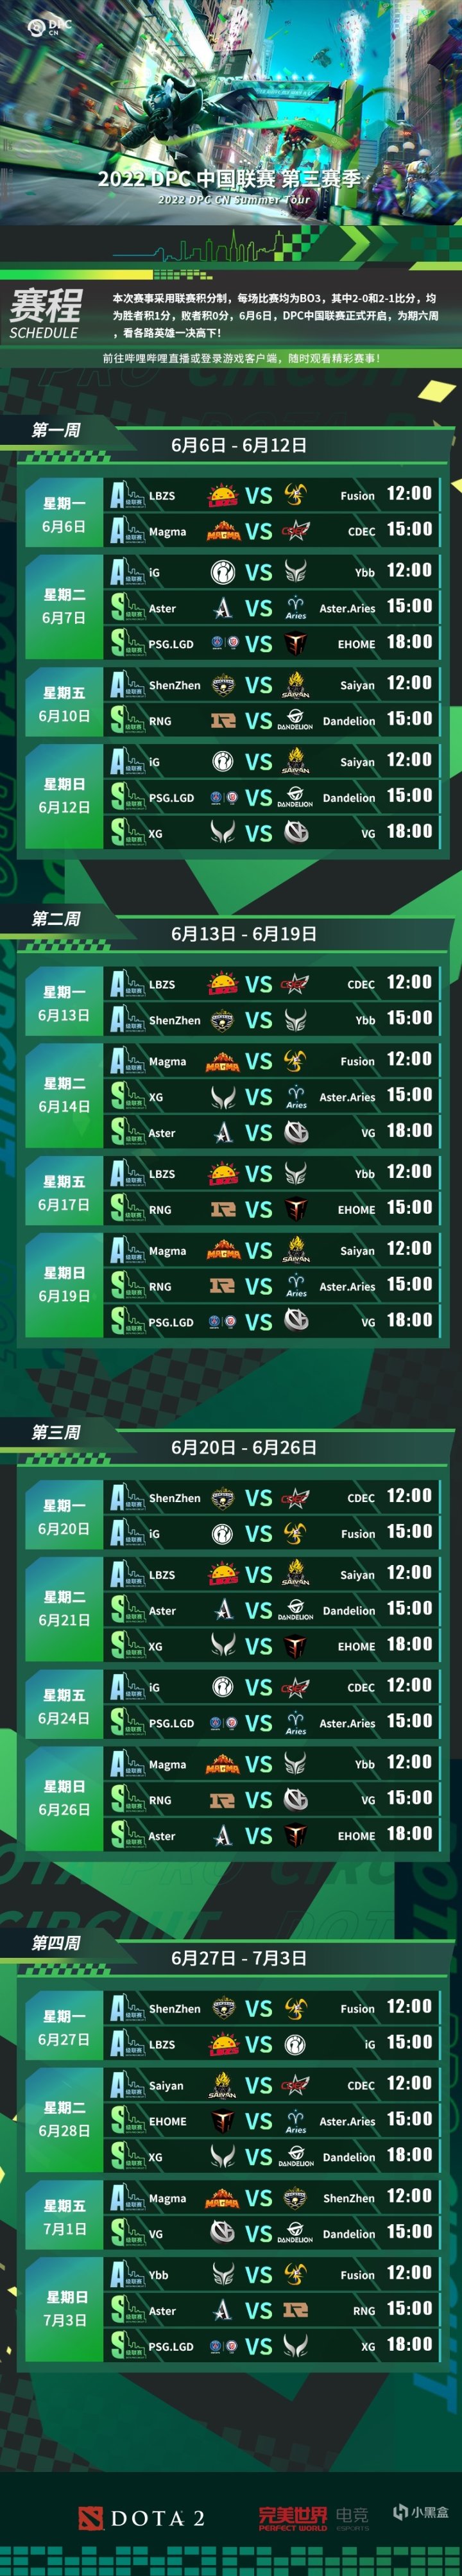 【刀塔2】DPC中国联赛第三赛季B站独播中！参与预测赢取奖励